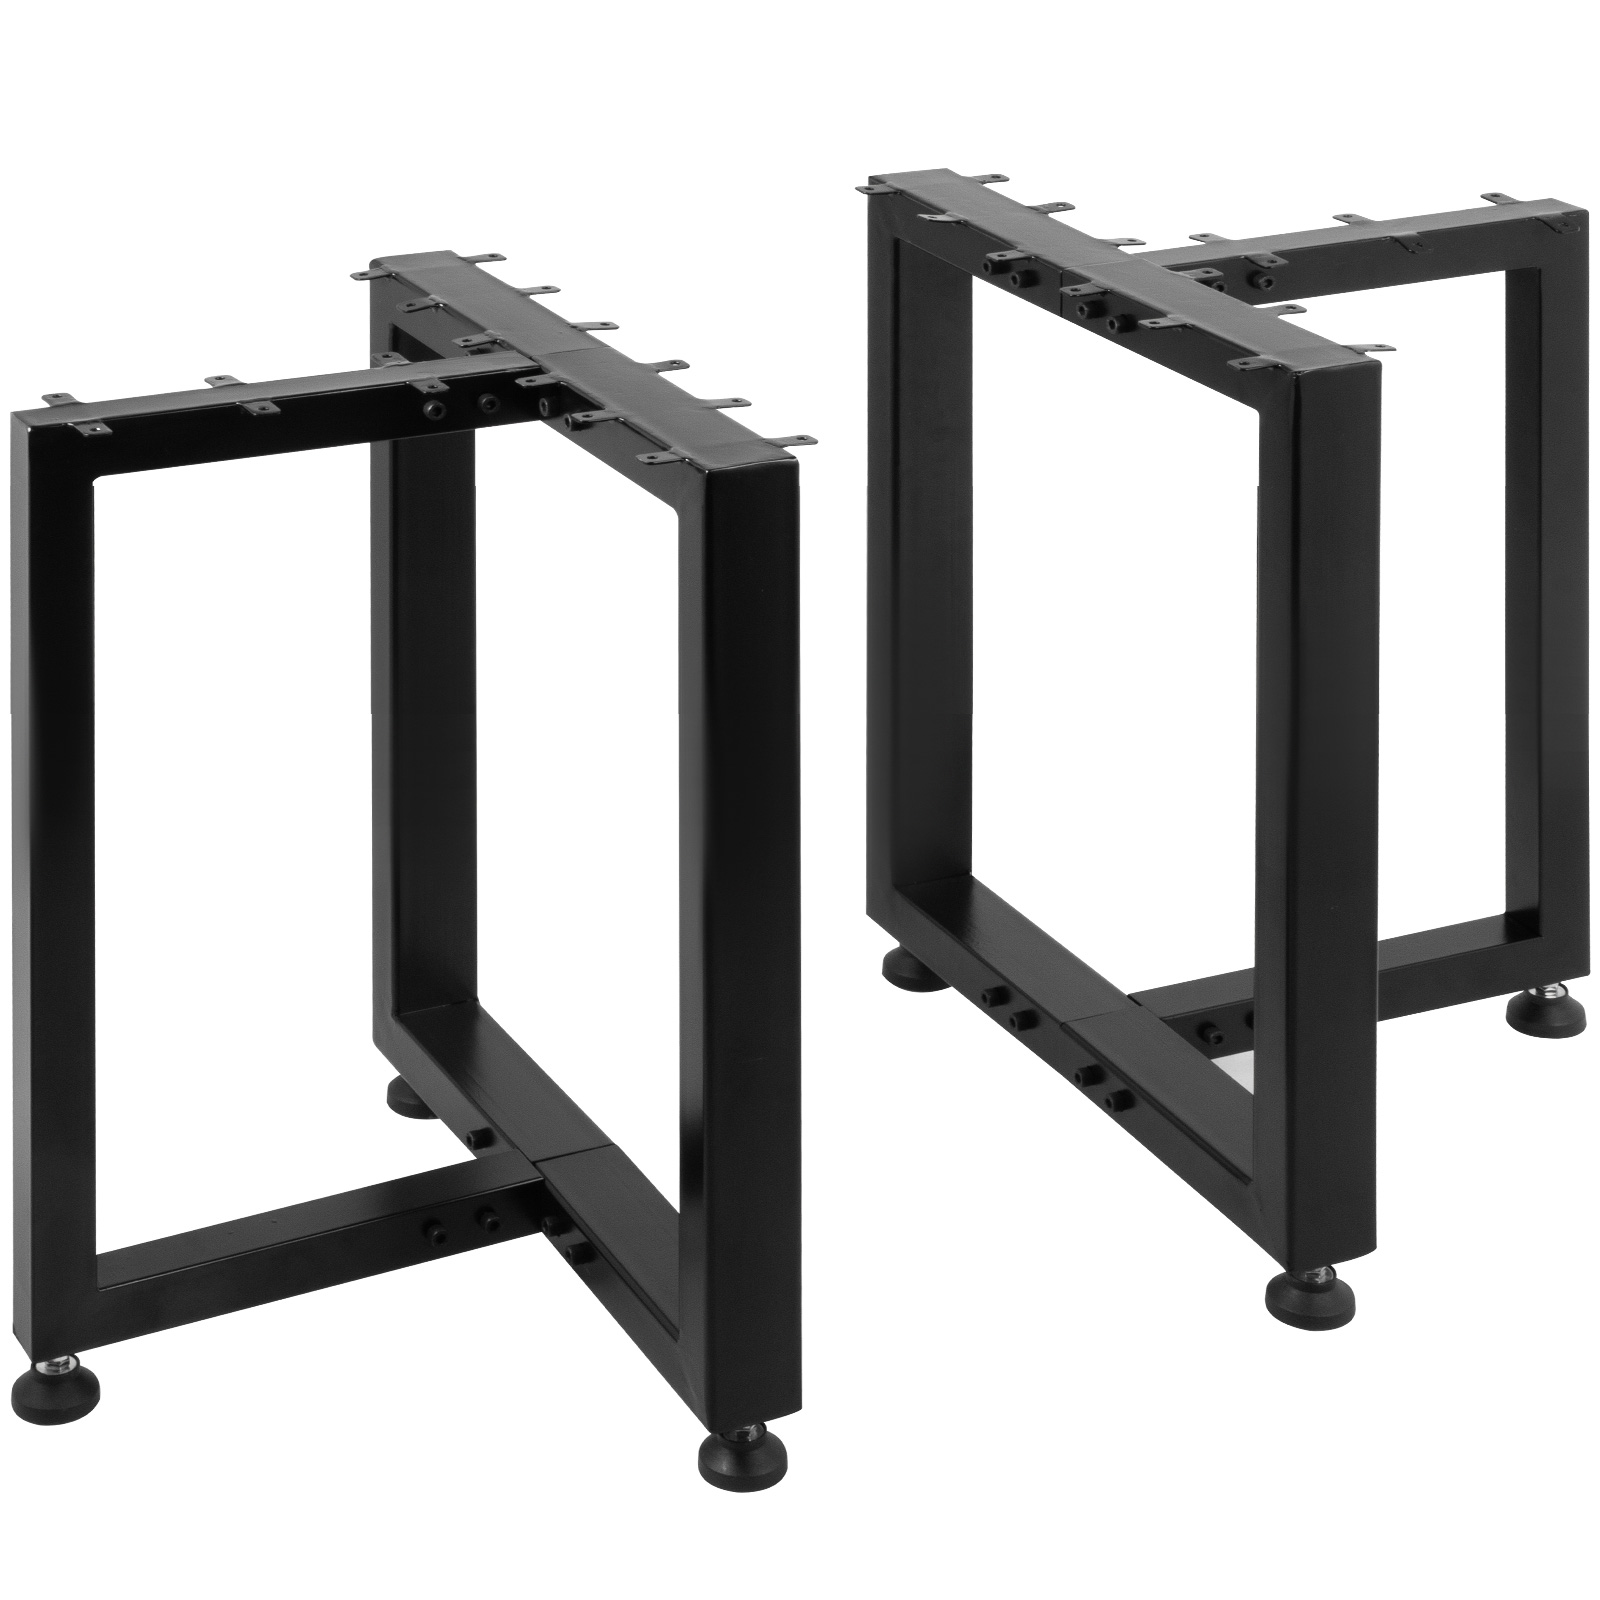 Patas de metal para mesa en forma de X de 28 pulgadas de alto, patas de  metal resistente, patas de escritorio industriales, juego de 2, color negro